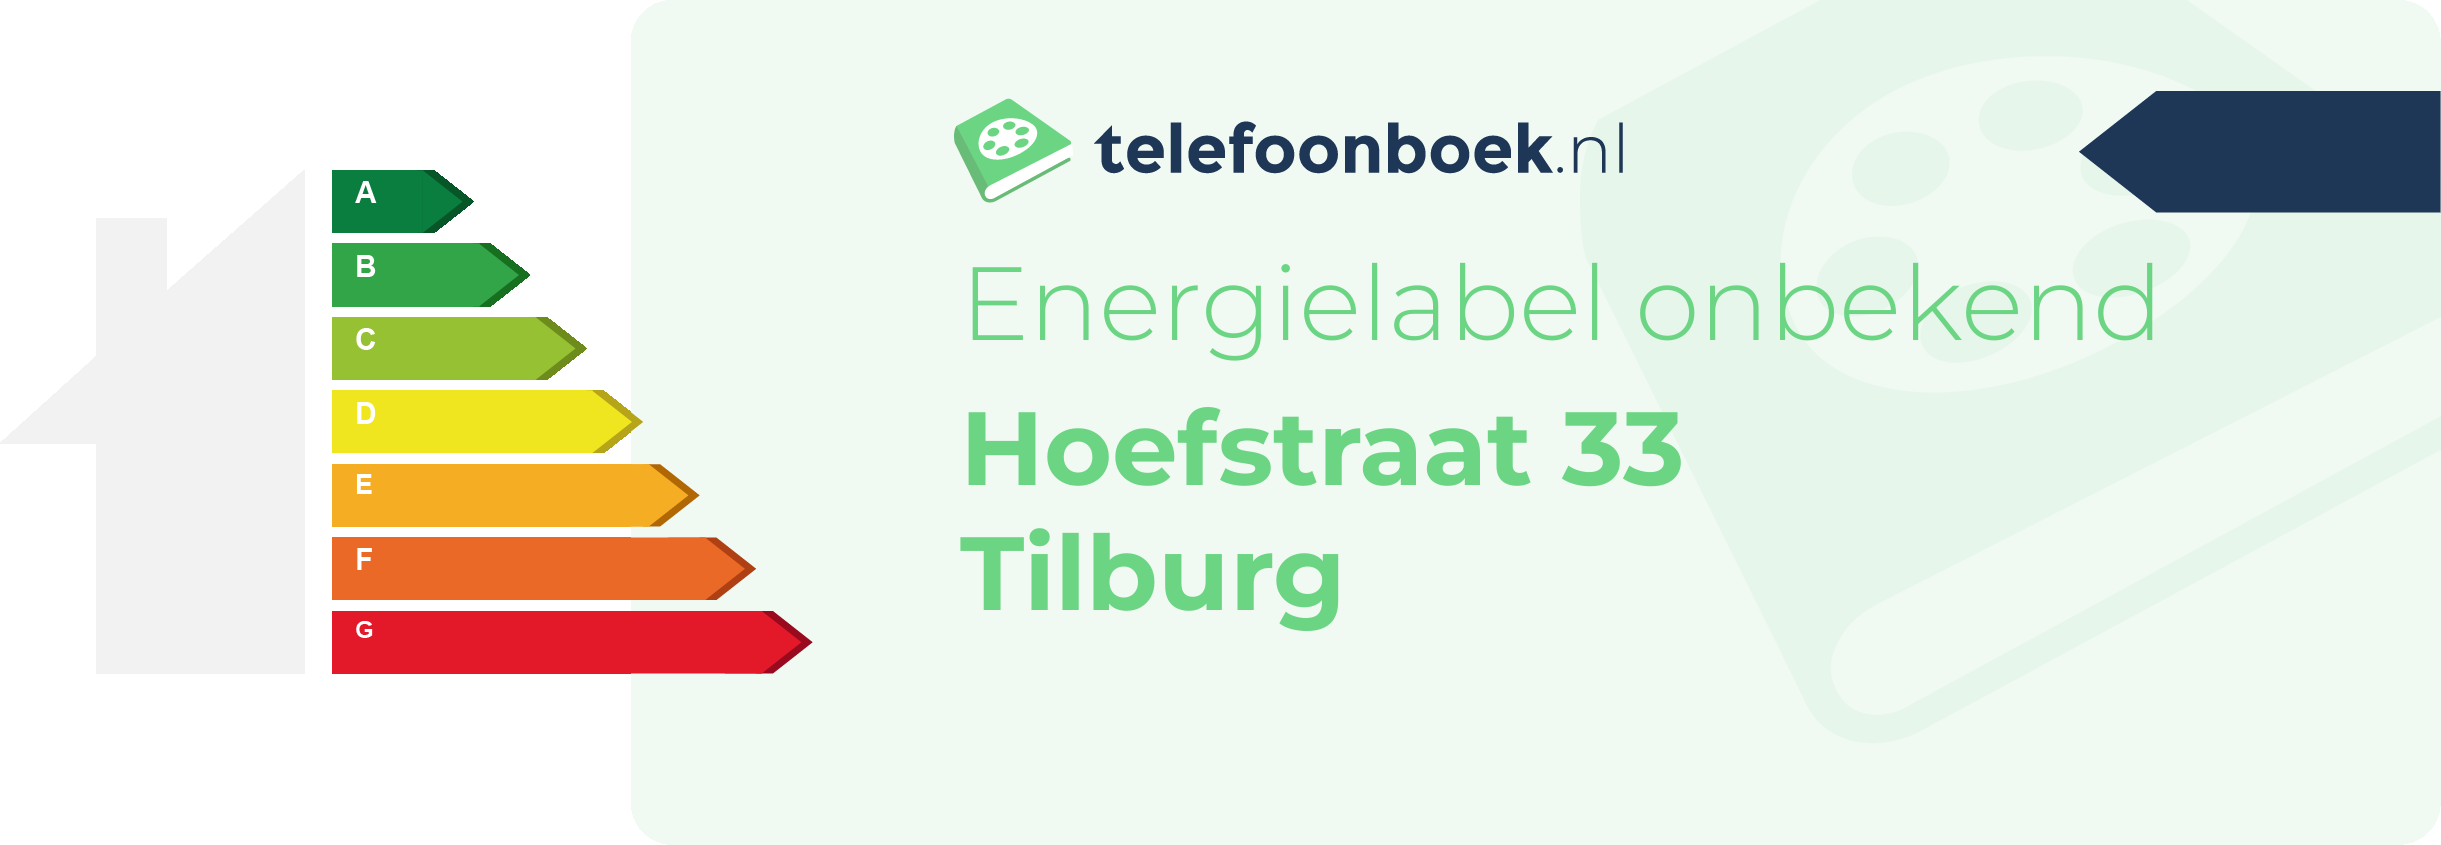 Energielabel Hoefstraat 33 Tilburg